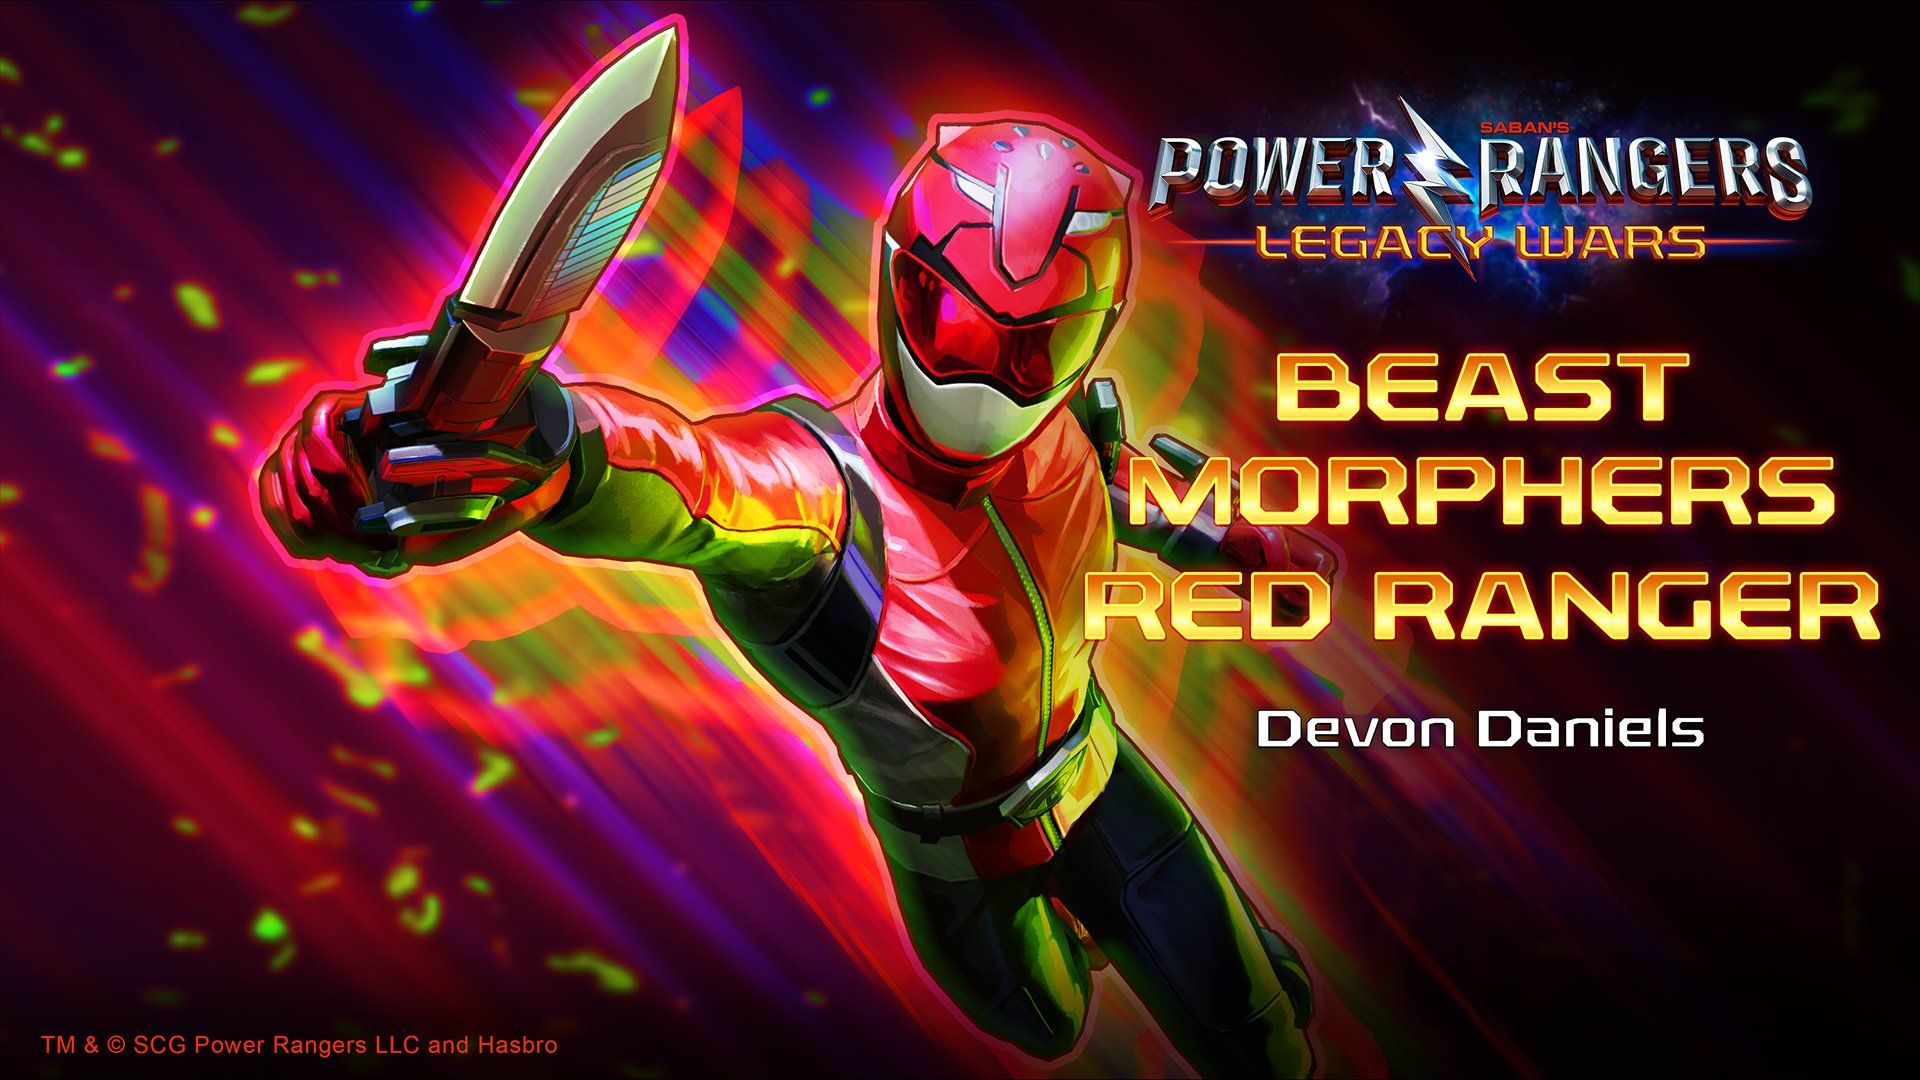 Devon Daniels. Power Rangers Legacy Wars